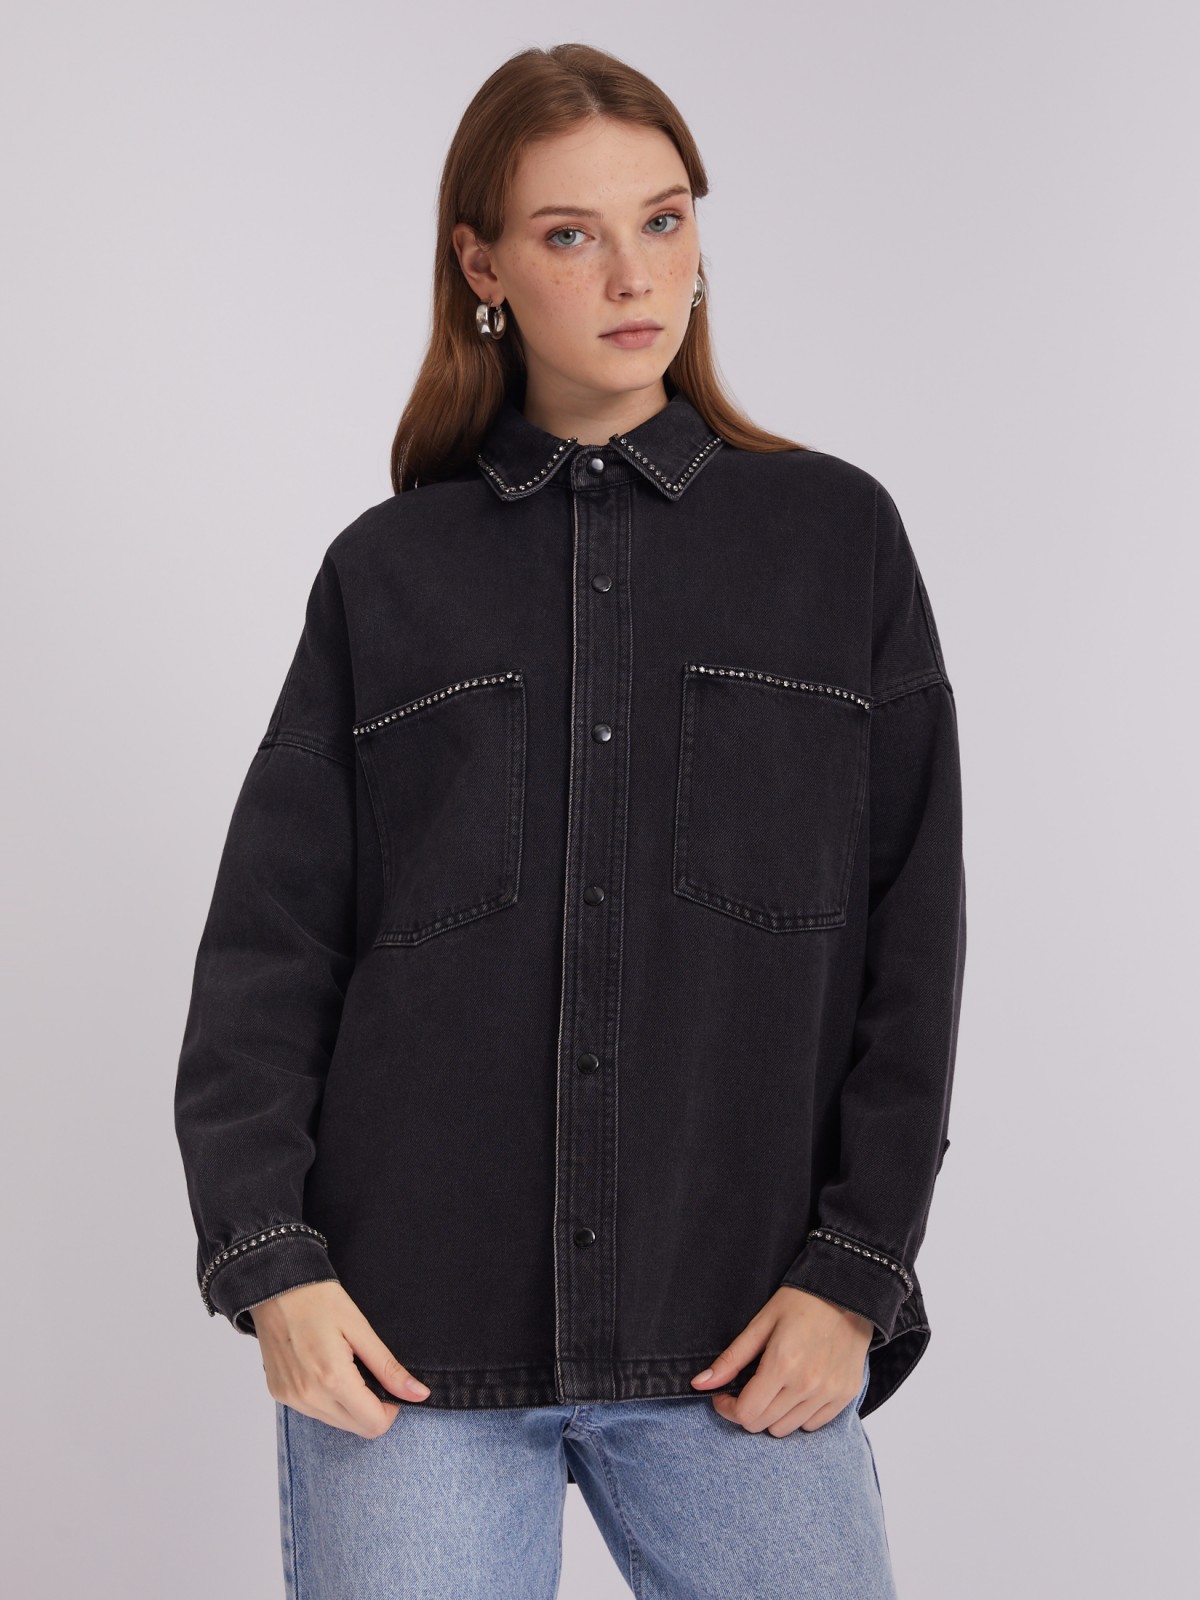 Джинсовая куртка-рубашка оверсайз силуэта со стразами zolla 023315D1G021, цвет черный, размер XXS - фото 4